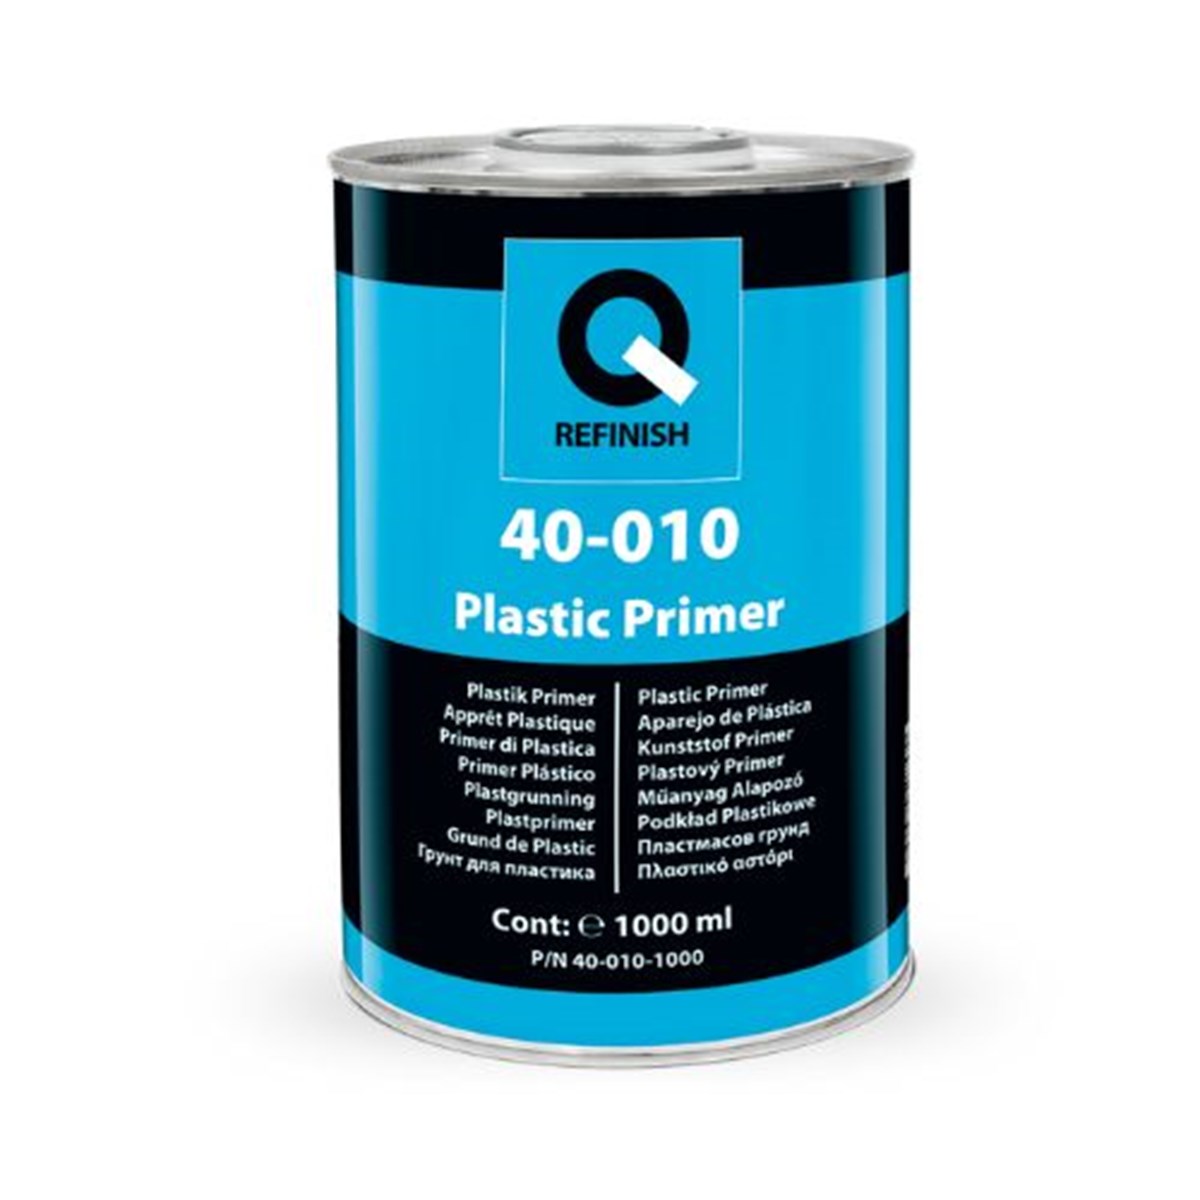 40-010 Plastic Primer - Primers